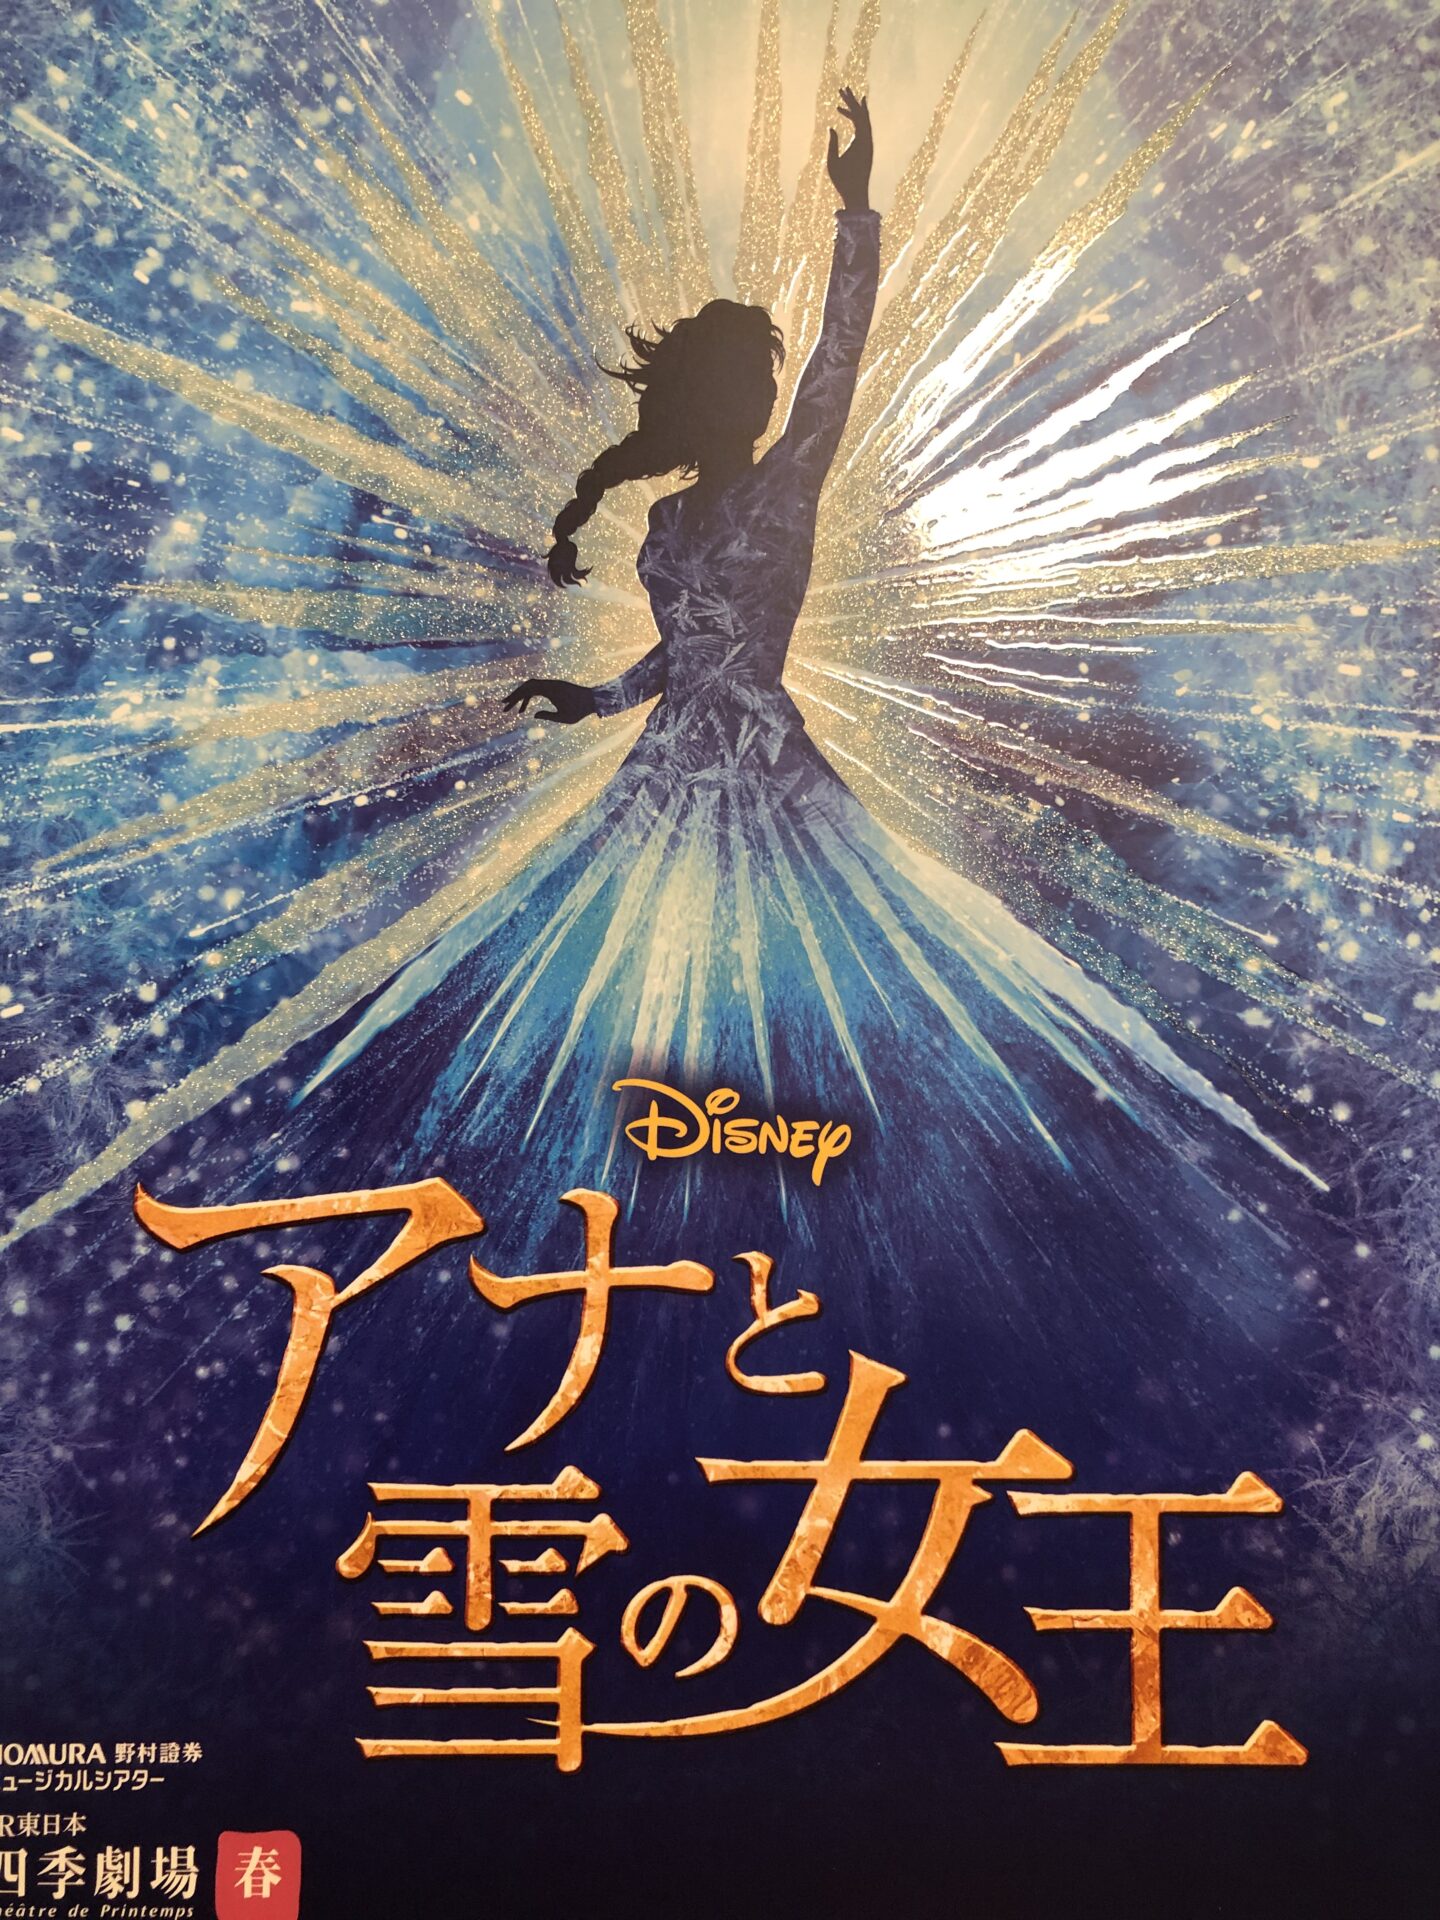 竹芝）劇団四季の「アナと雪の女王」を子連れ観劇するには -3歳娘のミュージカルデビュー-